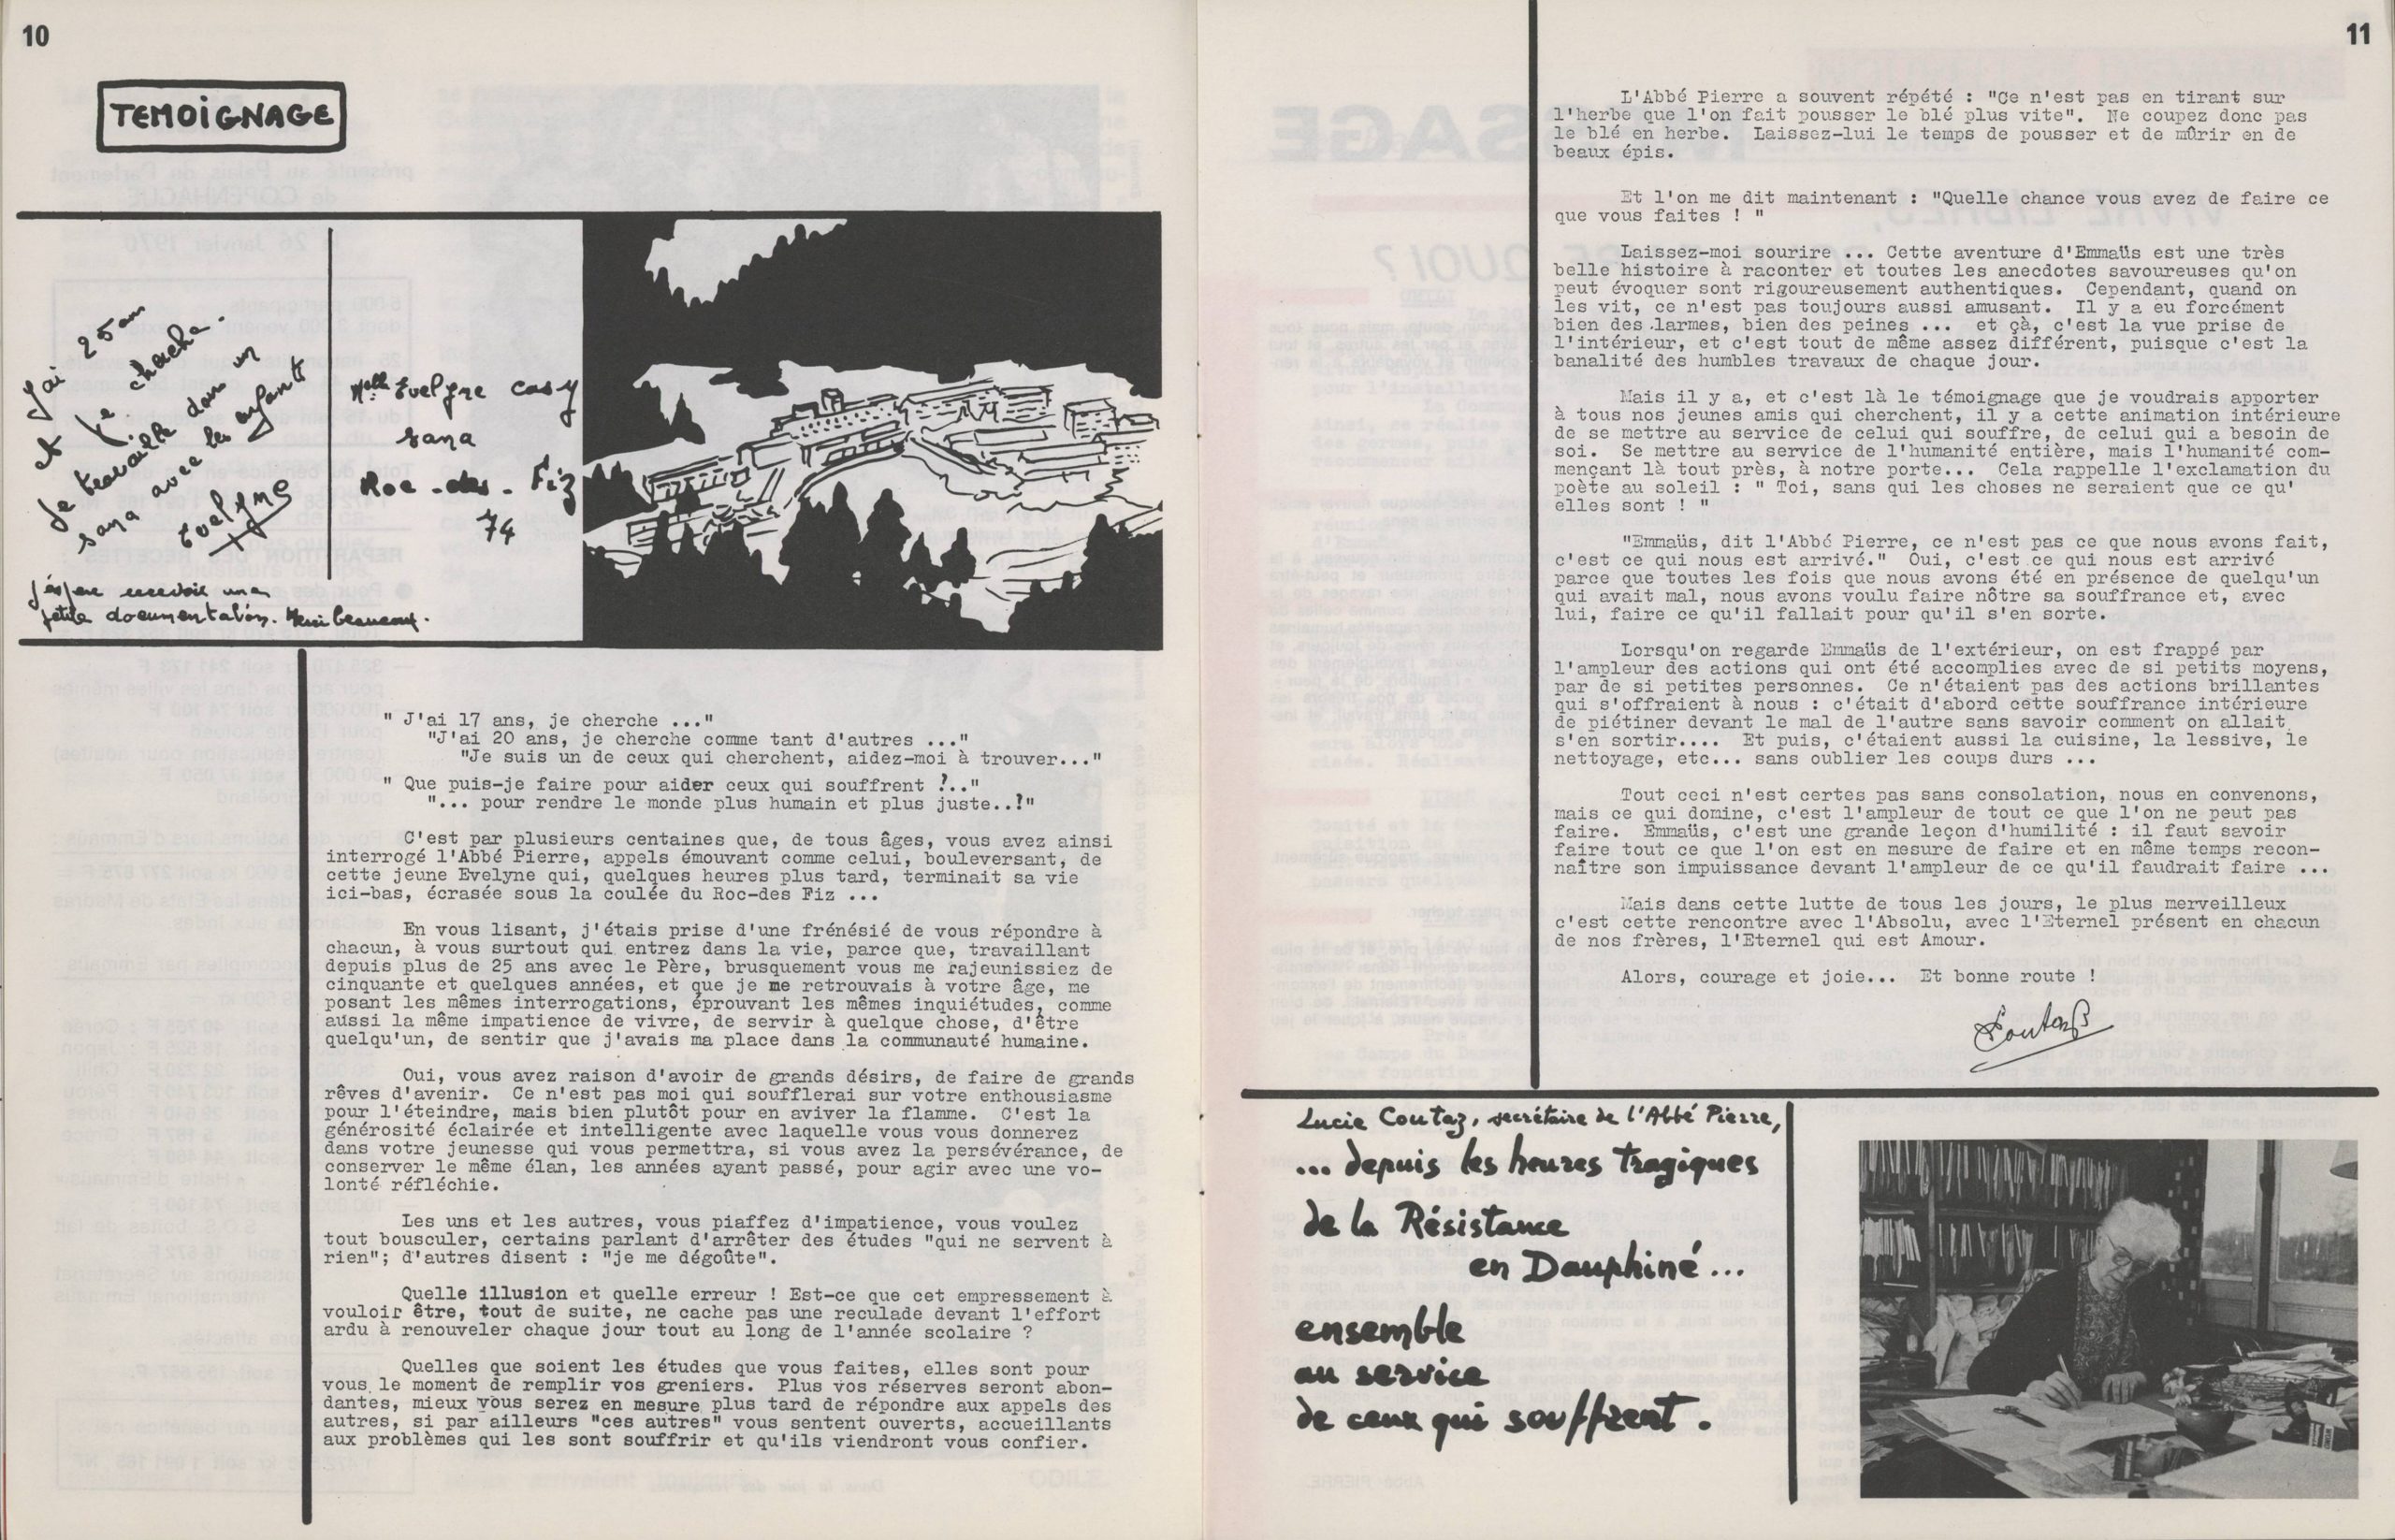 Témoignage de Lucie Coutaz à l’intention des jeunes - Faims & Soifs des hommes, n° 6-7, avril-mai 1970